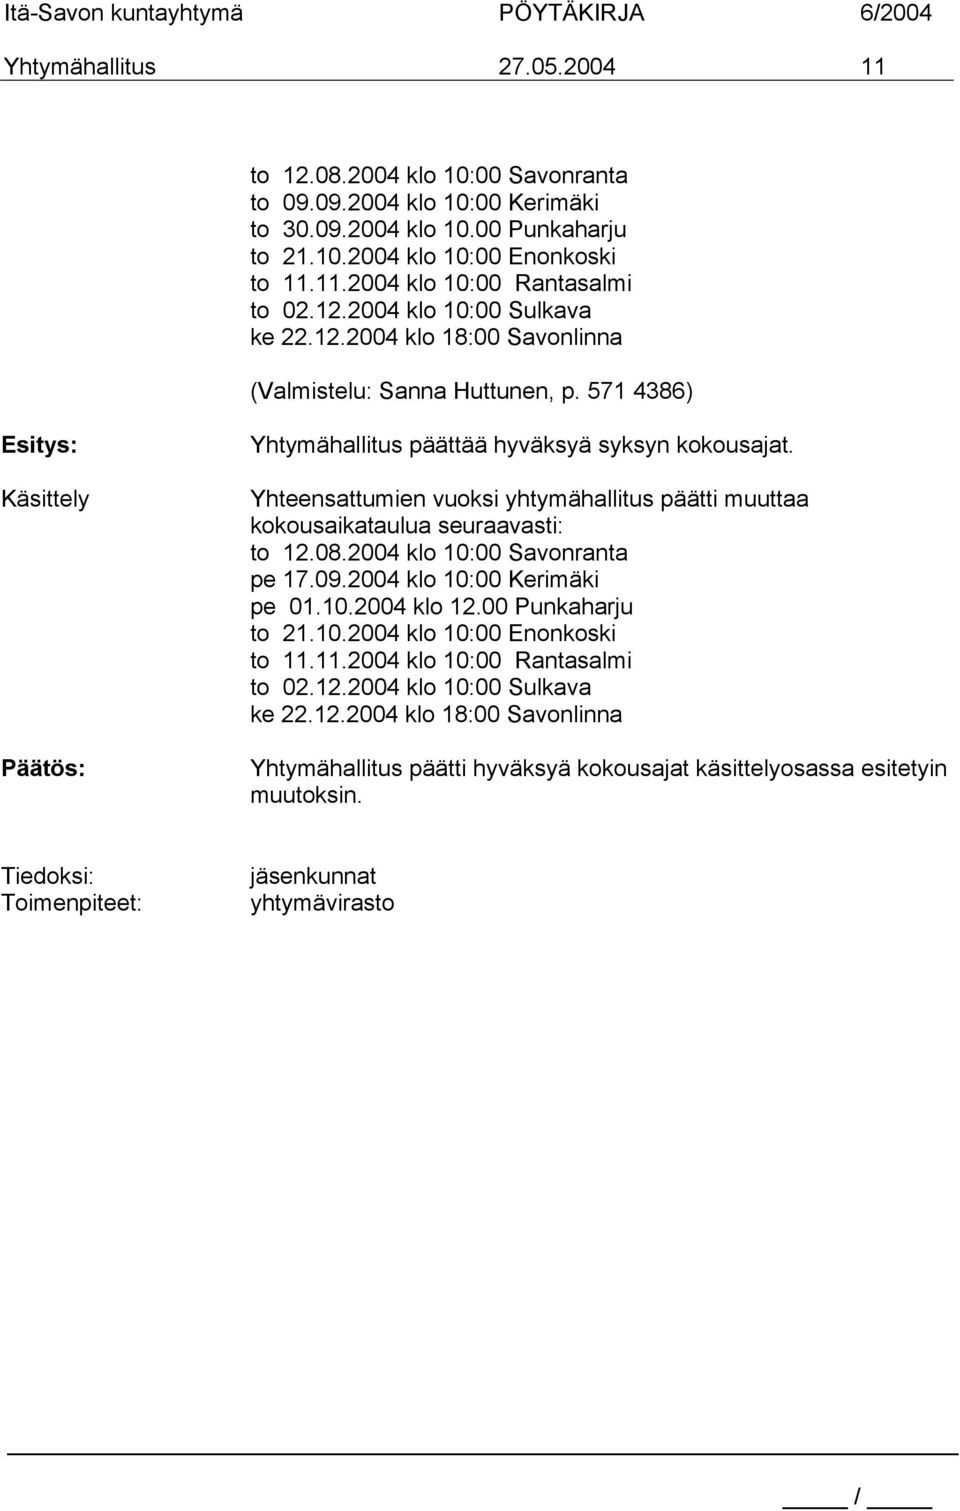 Yhteensattumien vuoksi yhtymähallitus päätti muuttaa kokousaikataulua seuraavasti: to 12.08.2004 klo 10:00 Savonranta pe 17.09.2004 klo 10:00 Kerimäki pe 01.10.2004 klo 12.00 Punkaharju to 21.10.2004 klo 10:00 Enonkoski to 11.